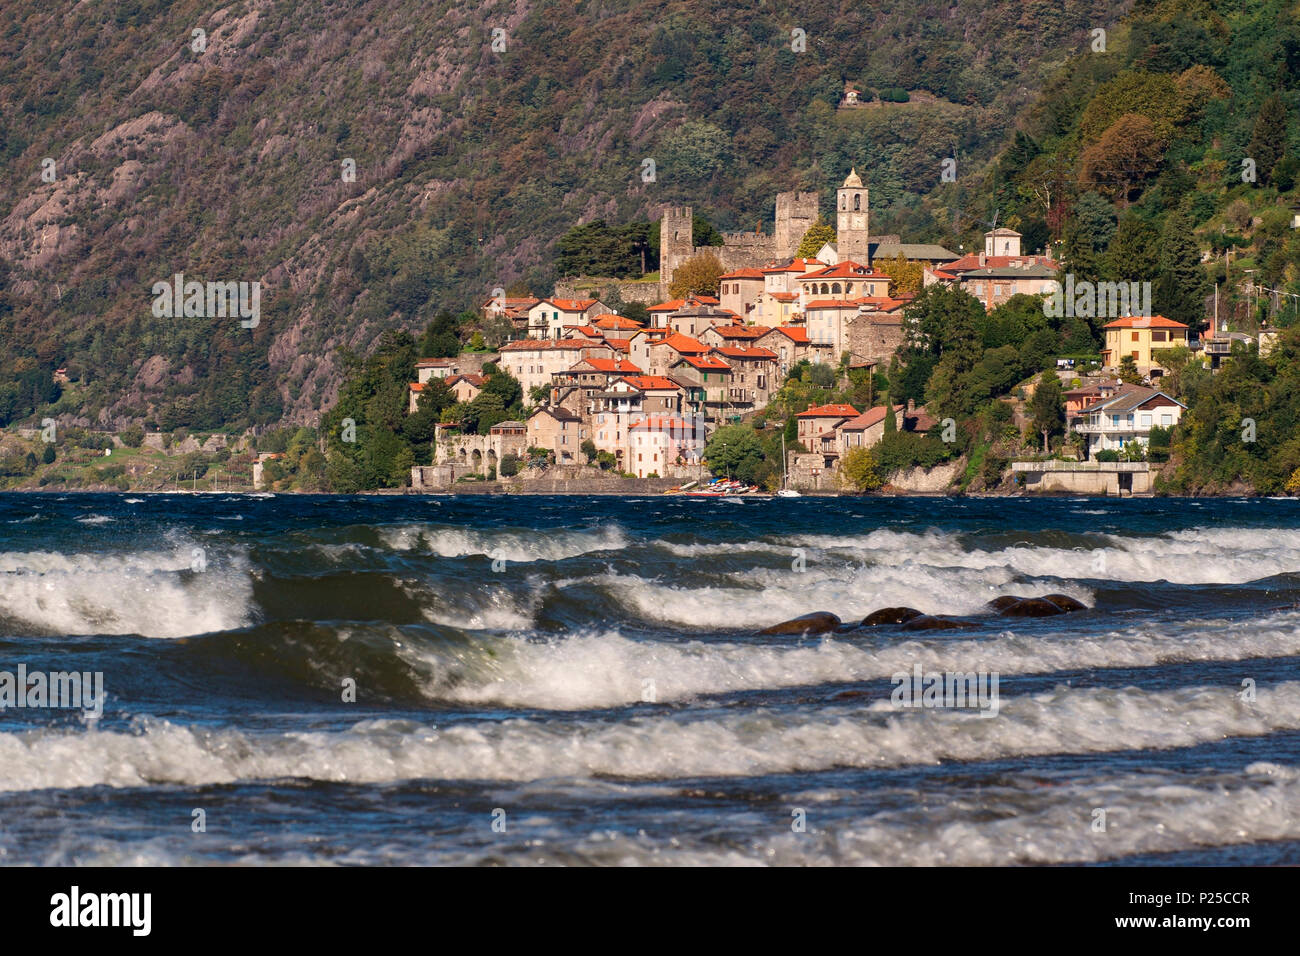 Village of Corenno, Corenno, Dervio, Lecco province, lake Como, Lombardy, Italy, Europe, Stock Photo